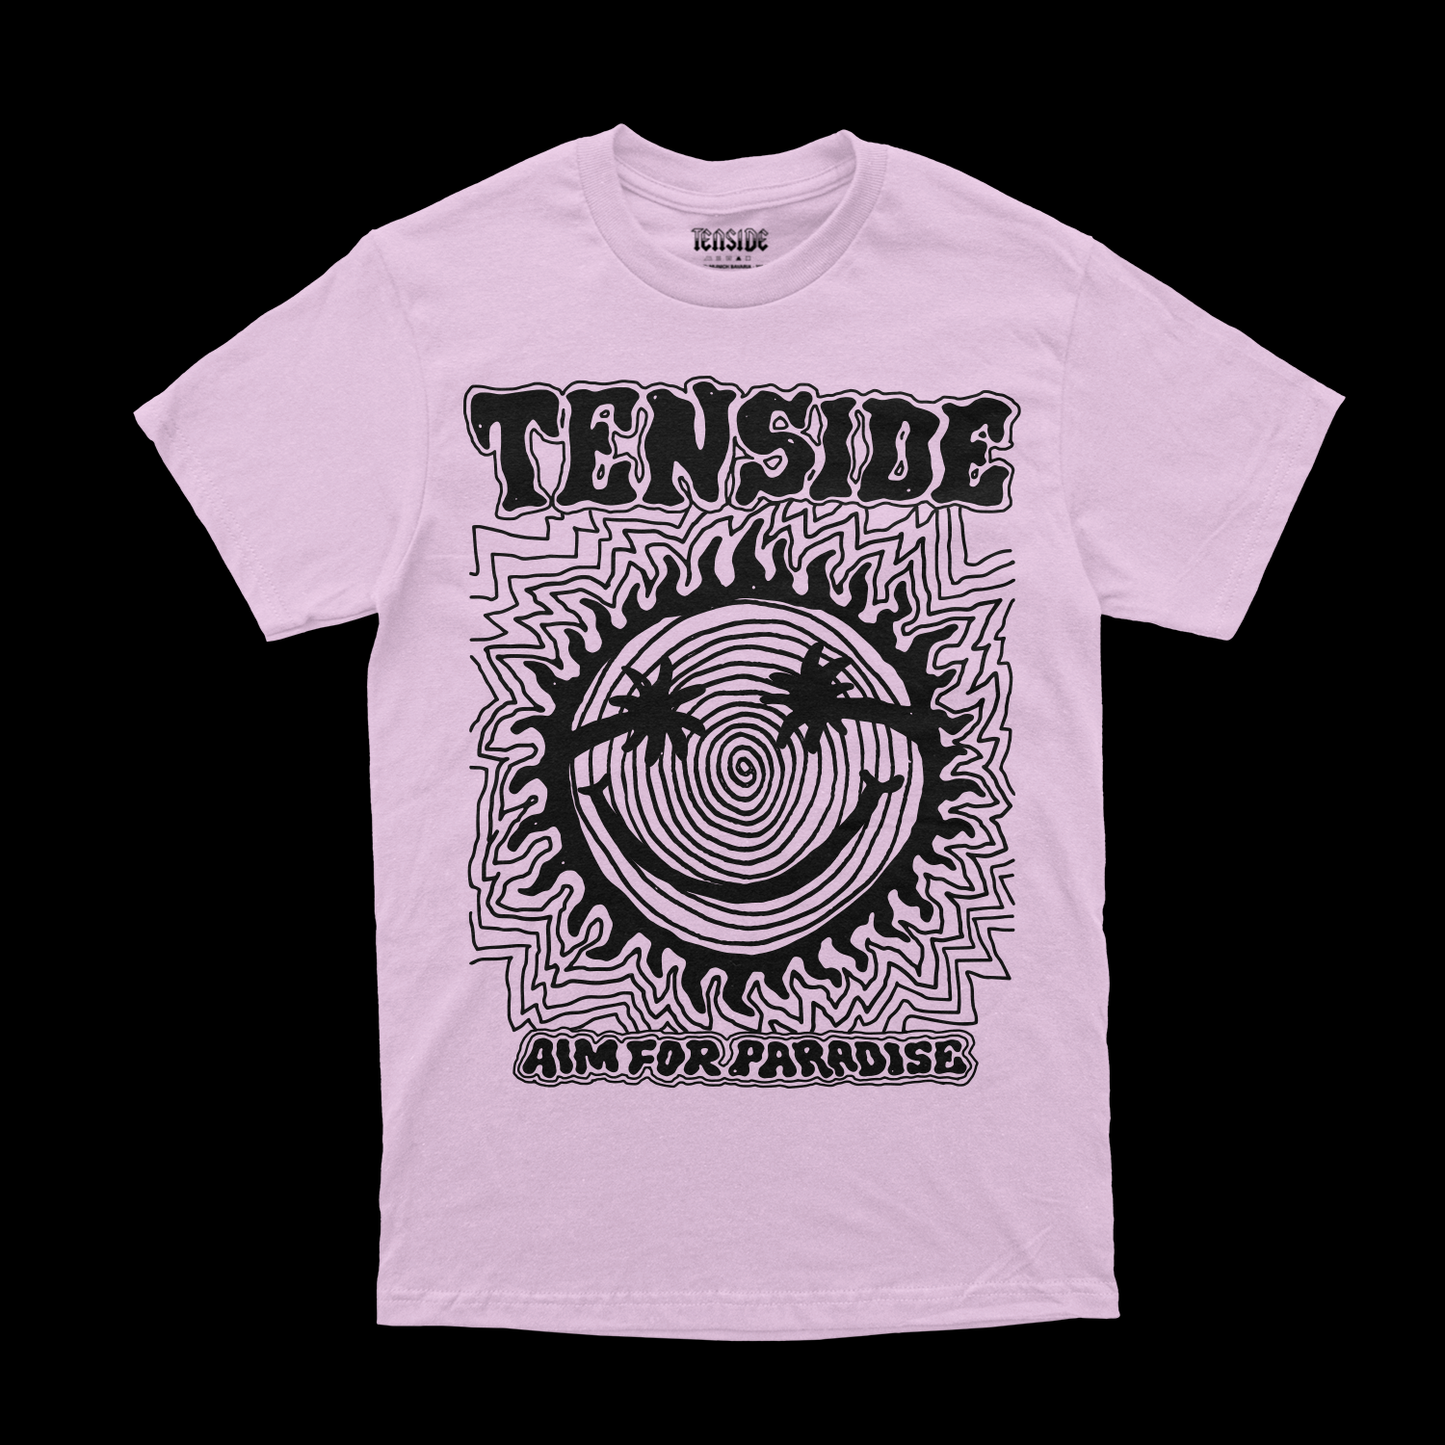 Aim For Paradise (T-Shirt)